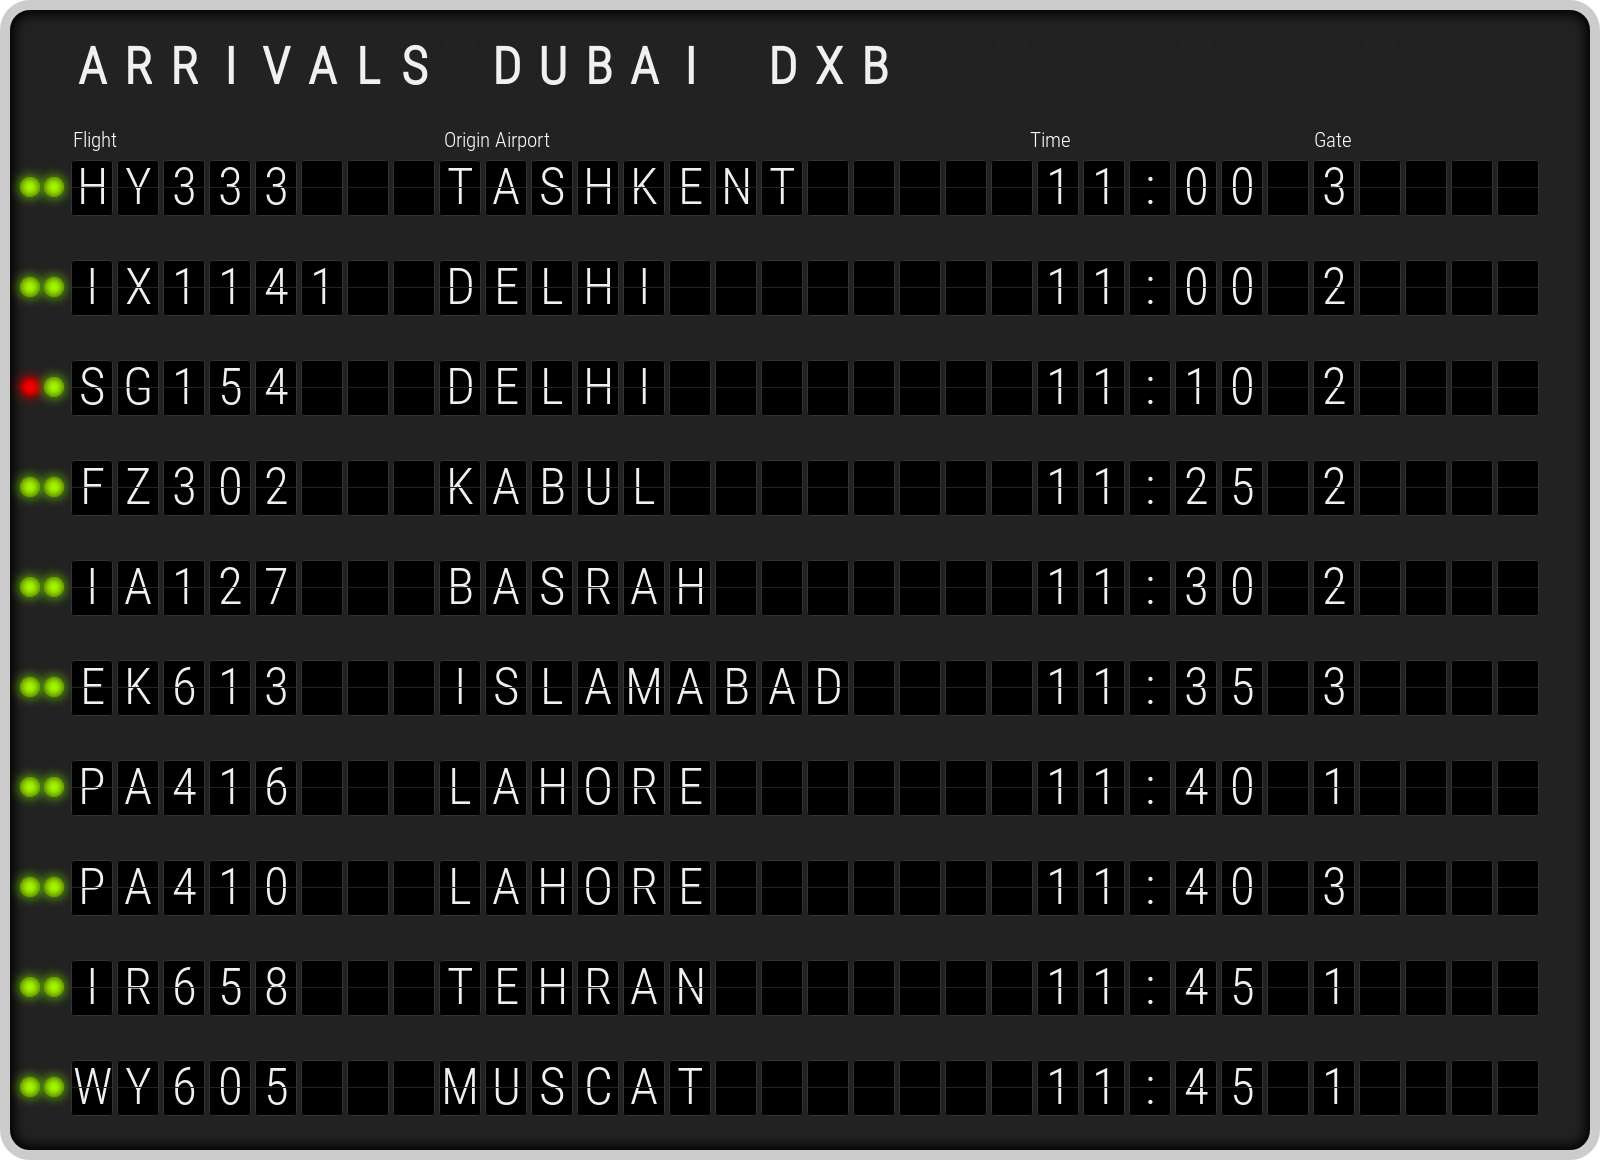 dxb flight arrivals